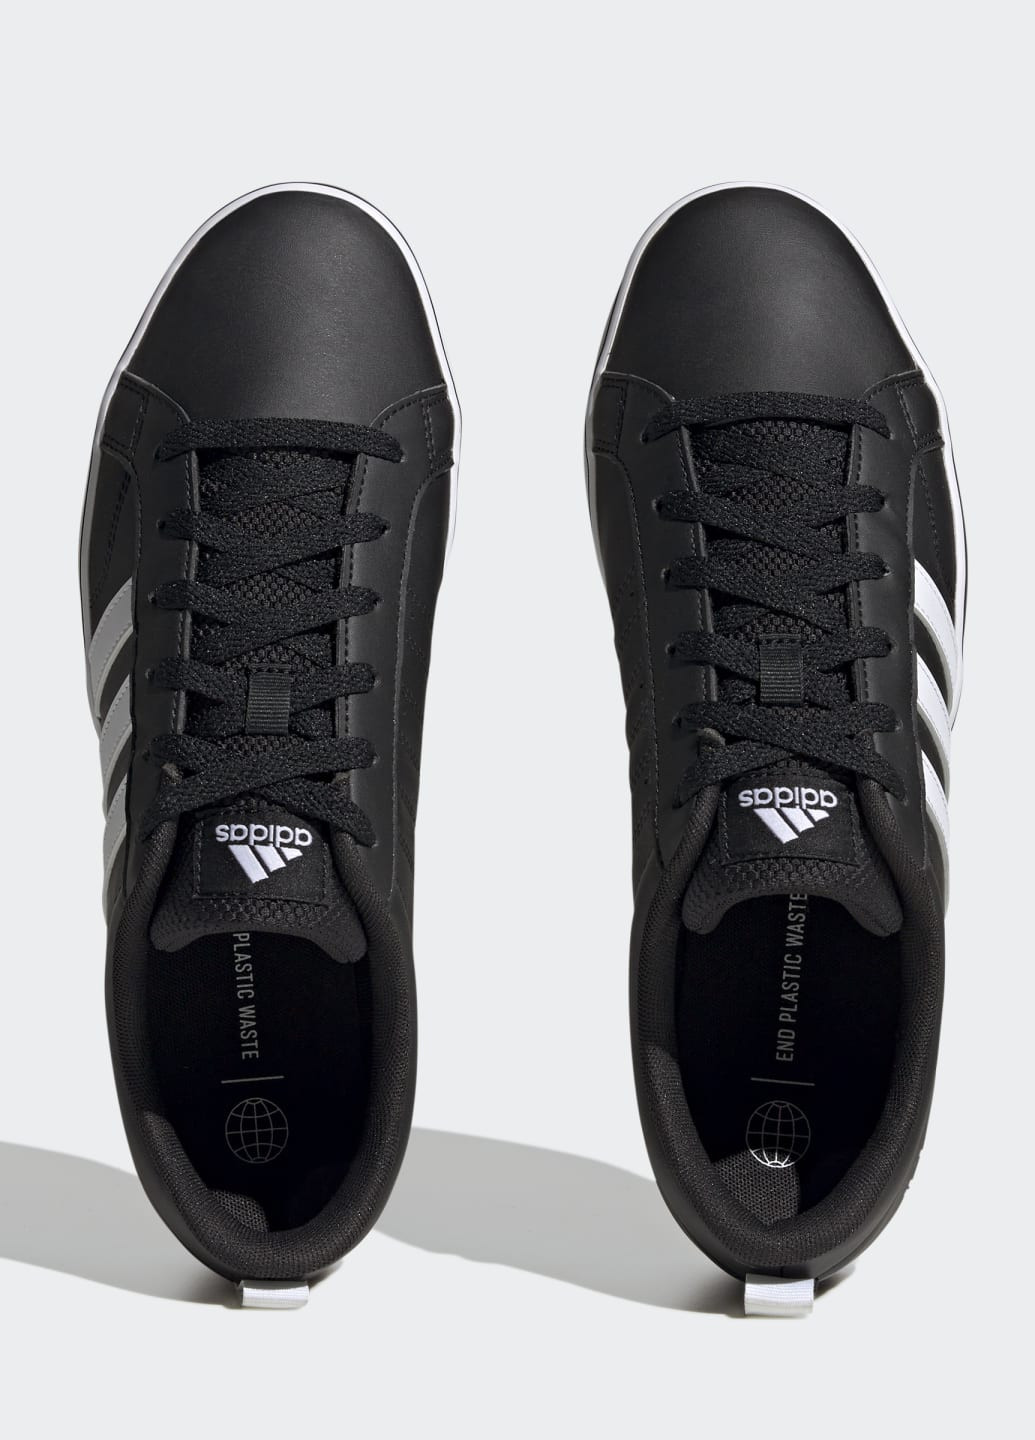 Черные всесезонные кроссовки vs pace 2.0 3-stripes branding synthetic nubuck adidas